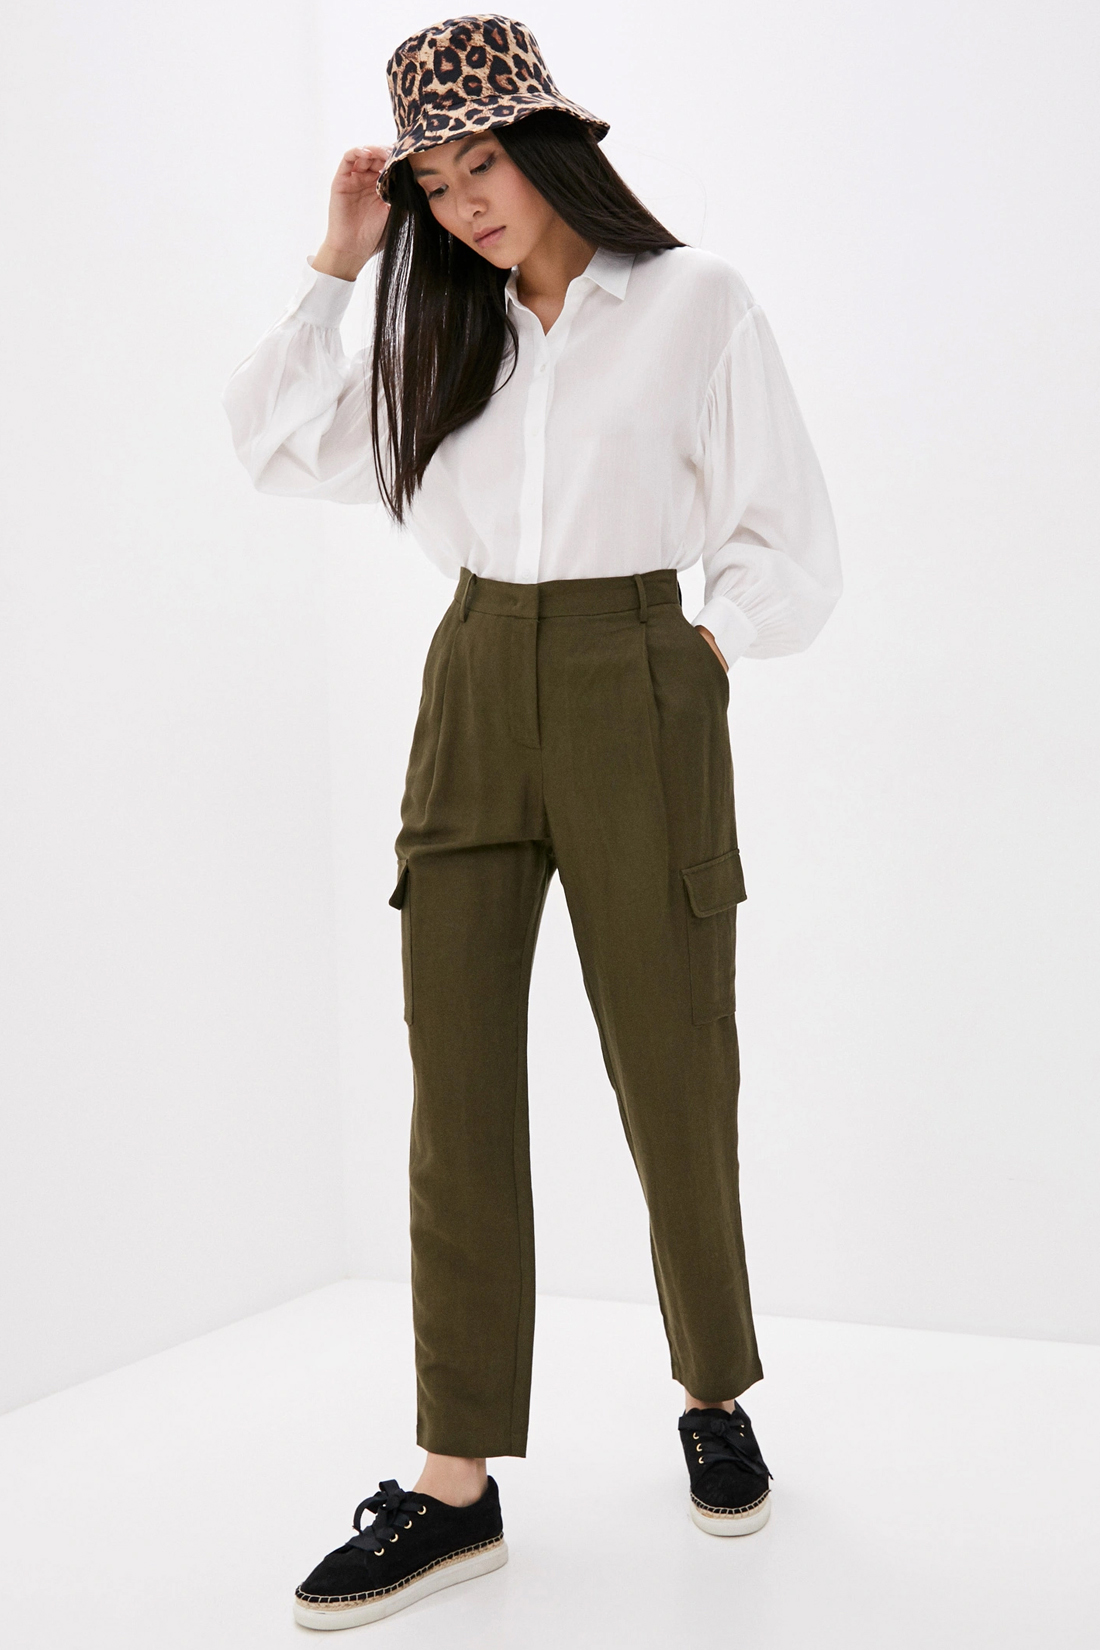 Что-то с чем-то: гид по актуальным образам с брюками Модный блог Baon.